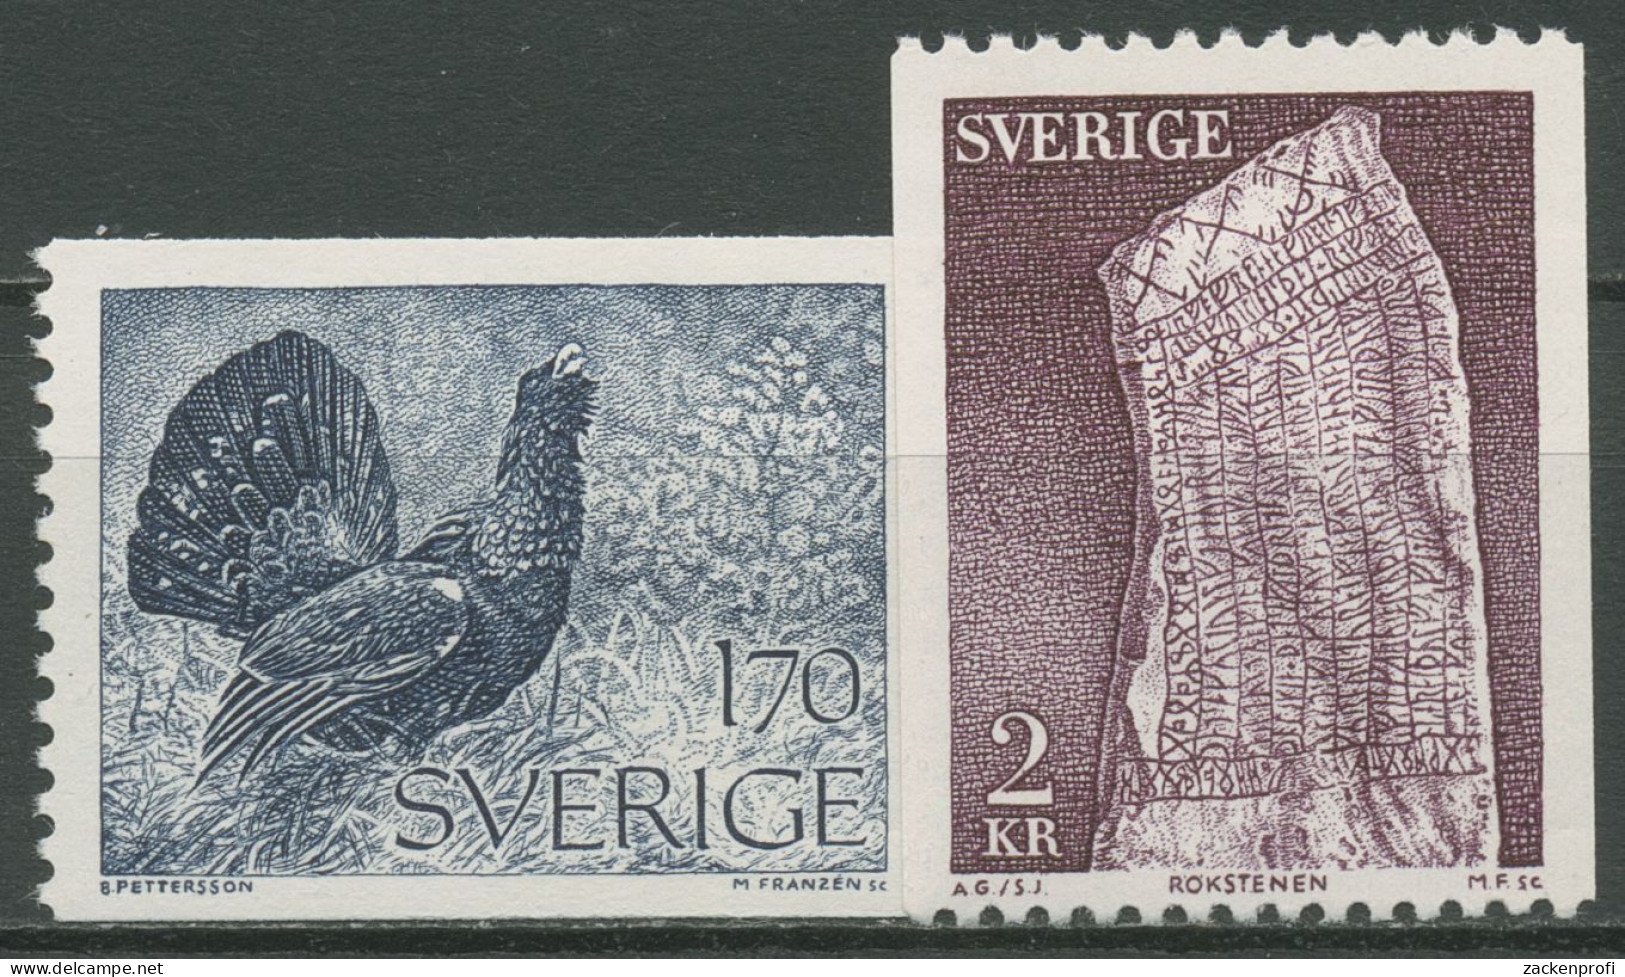 Schweden 1975 Auerhuhn Runenstein 906/07 Y Postfrisch - Ongebruikt